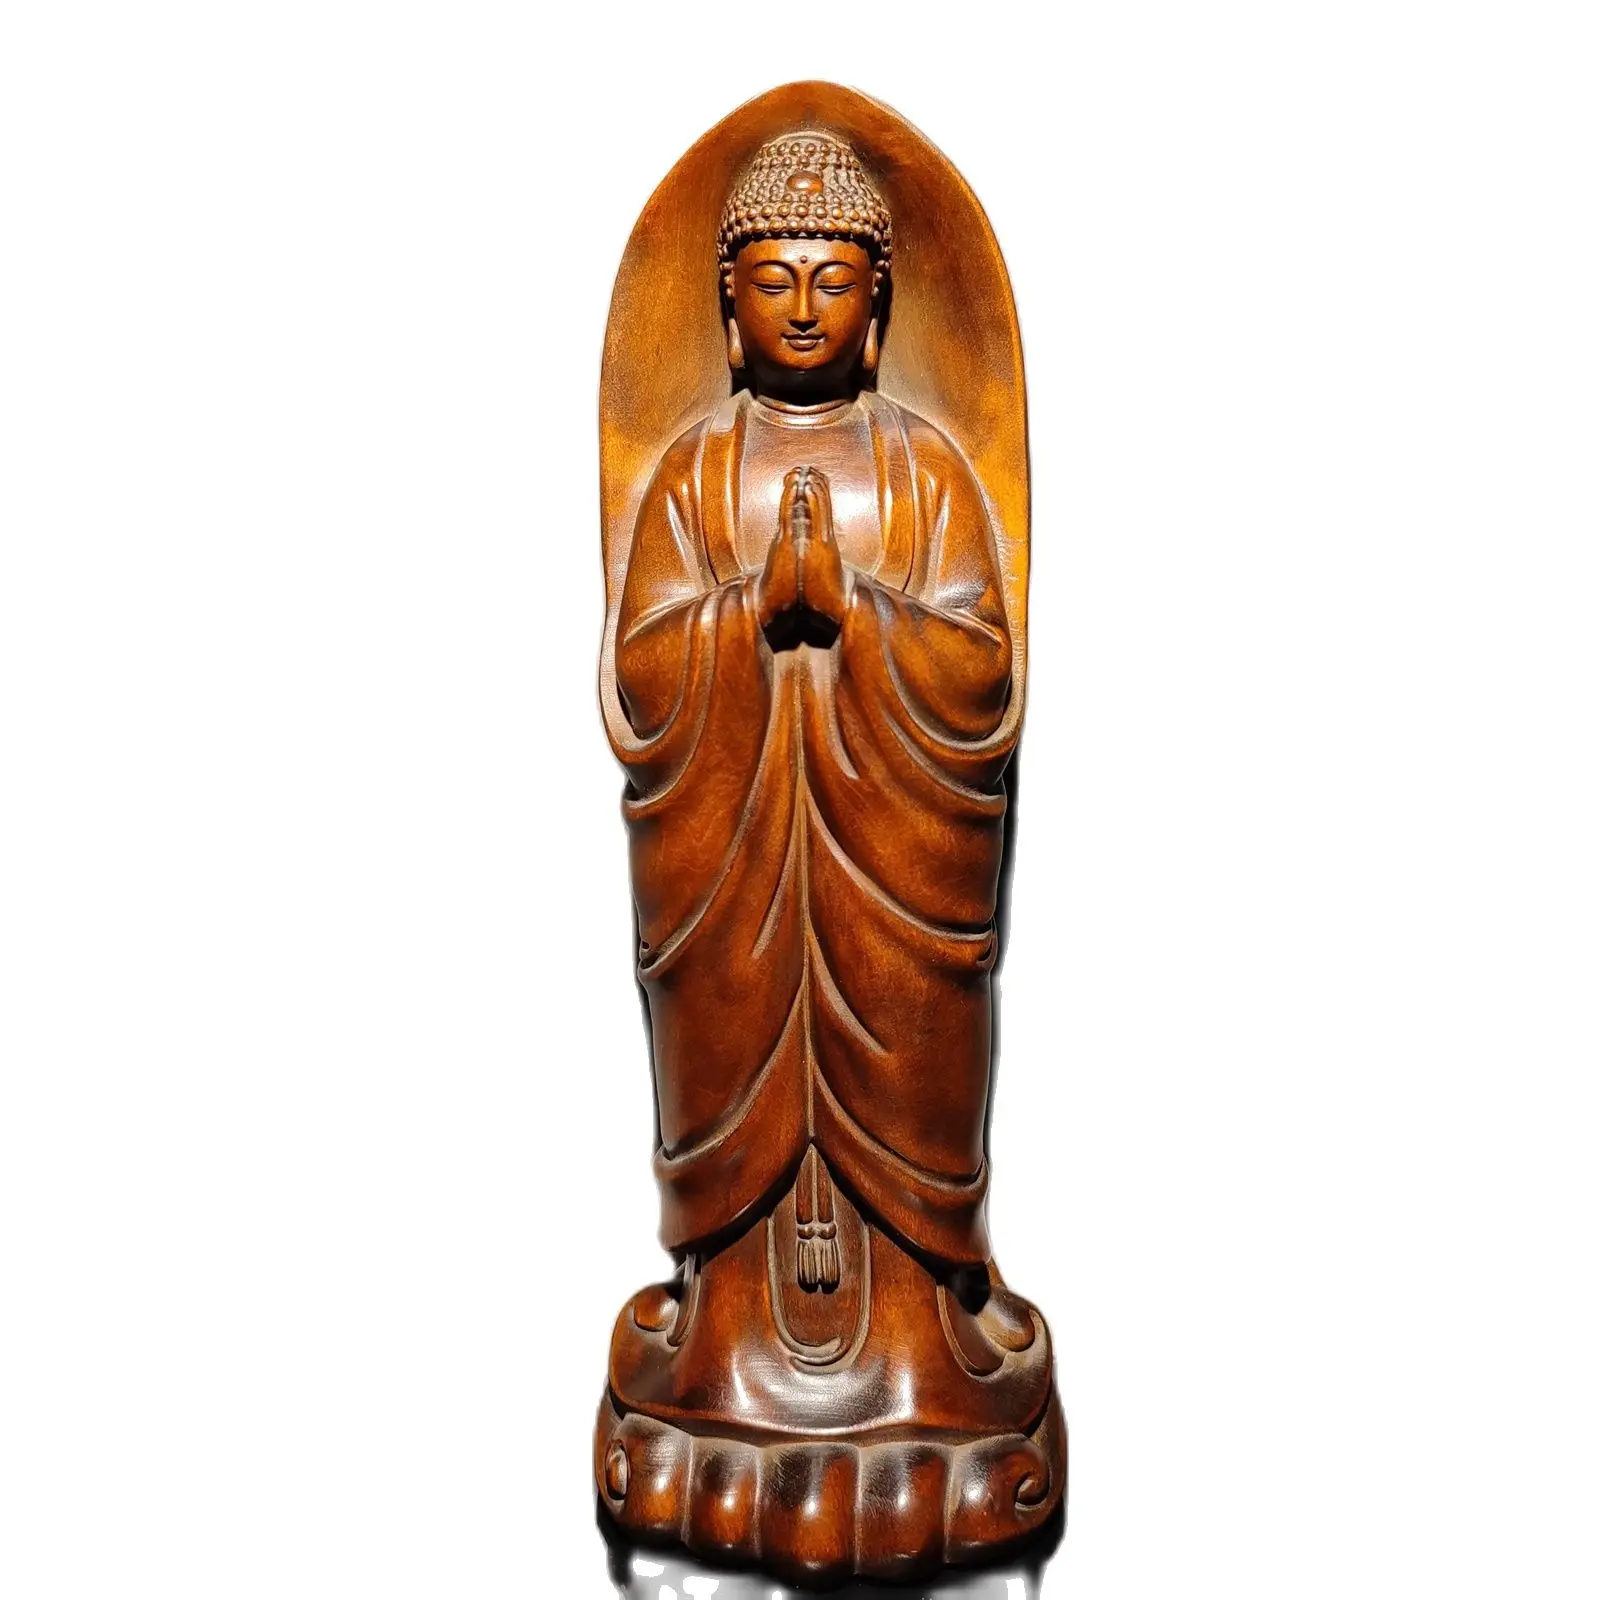 

8 дюймов античная деревянная резьба из самшита деревянная скульптура статуя Будды Шакьямуни декор стол обучение сувенир Забавный